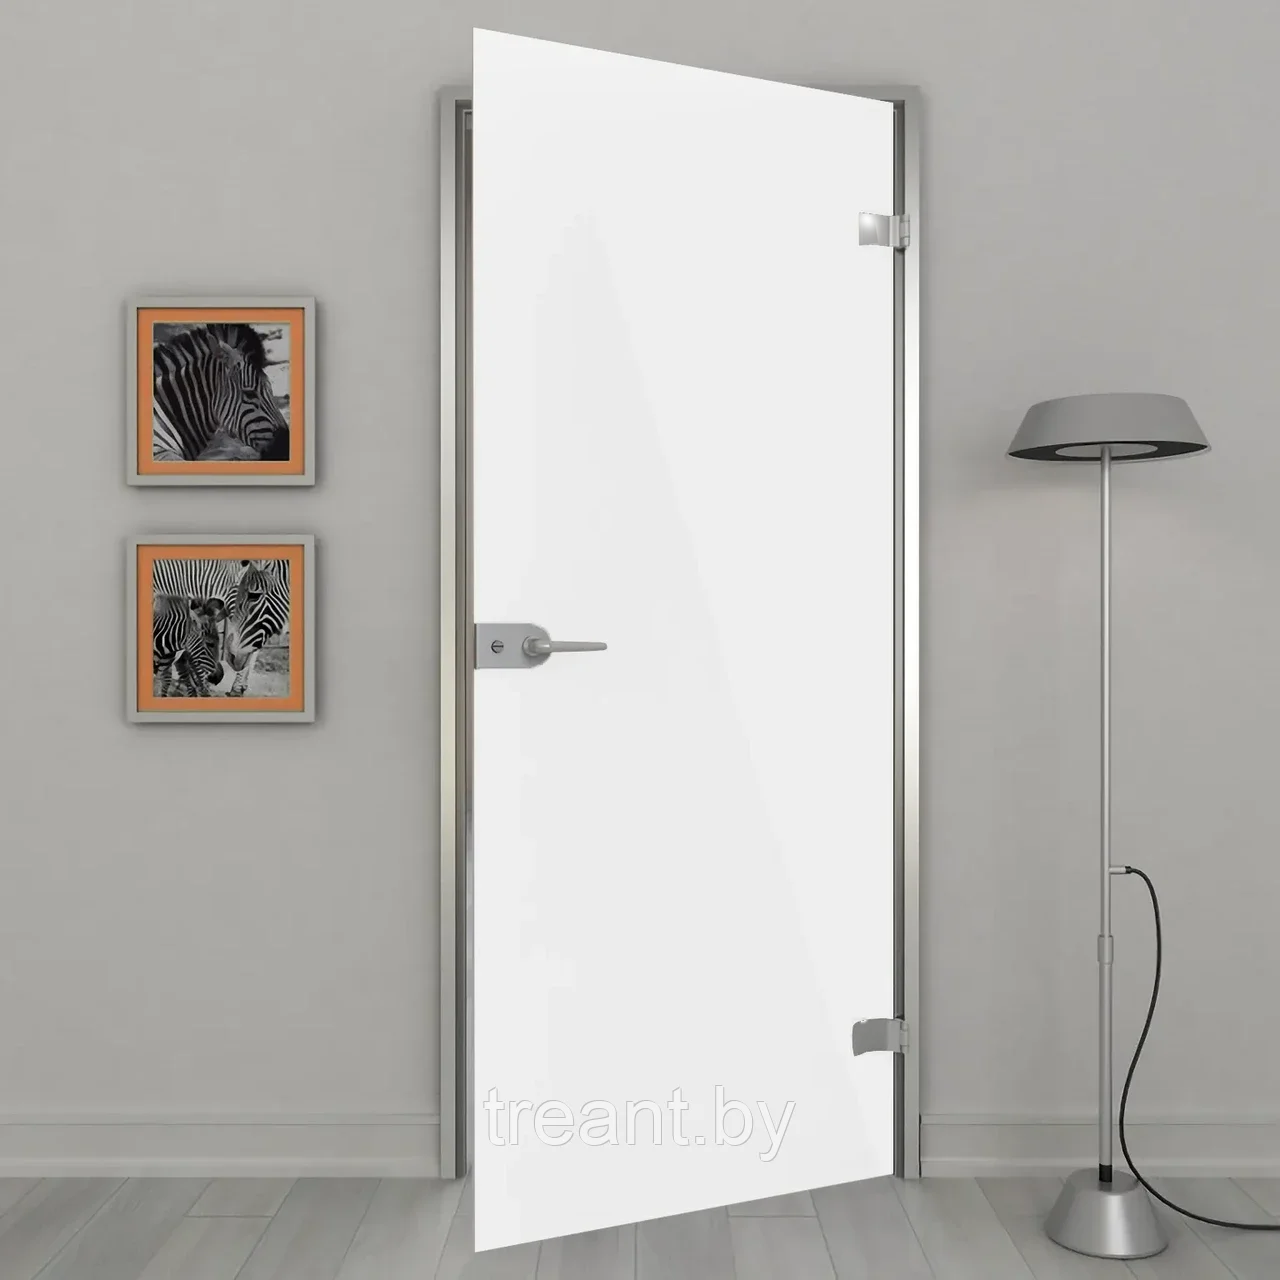 Распашная межкомнатная стеклянная дверь Modena Emalit White S (осветленное стекло)